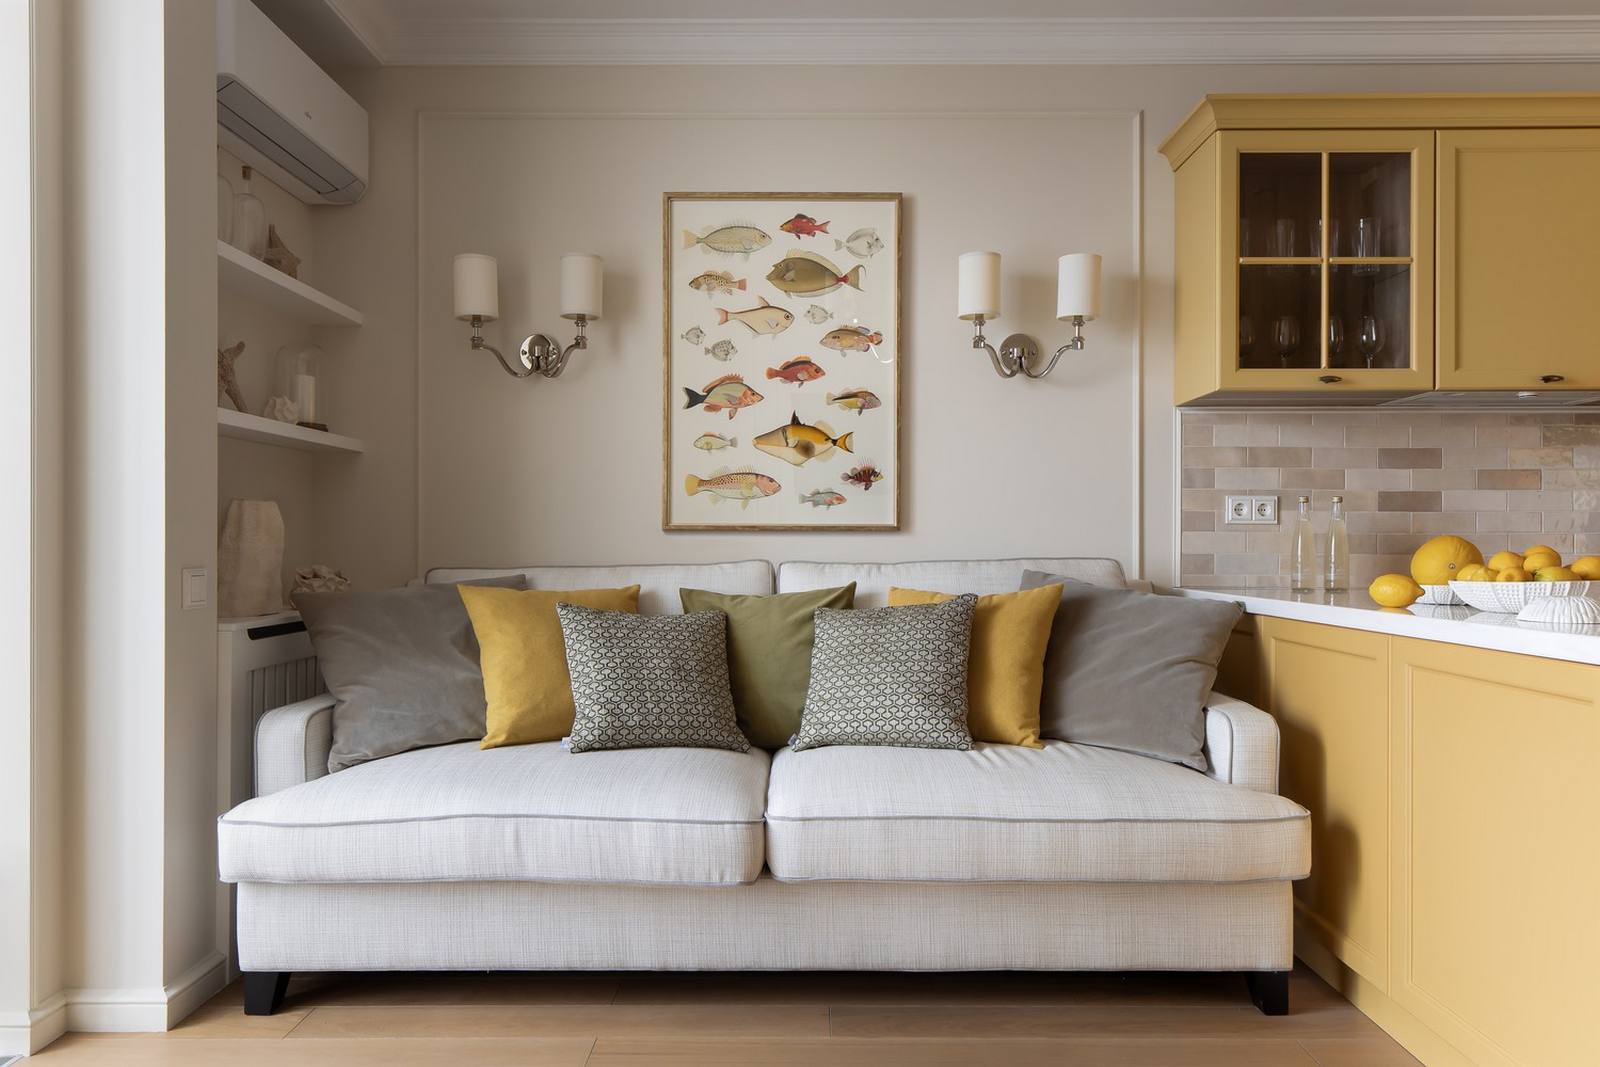 Phòng khách sử dụng gam màu be để sơn tường, sàn nhà lát gỗ tự nhiên cho cảm giác ấm áp. Chiếc ghế sofa màu trắng êm ái, rộng rãi với rất nhiều những chiếc gối tựa màu vàng và xám.